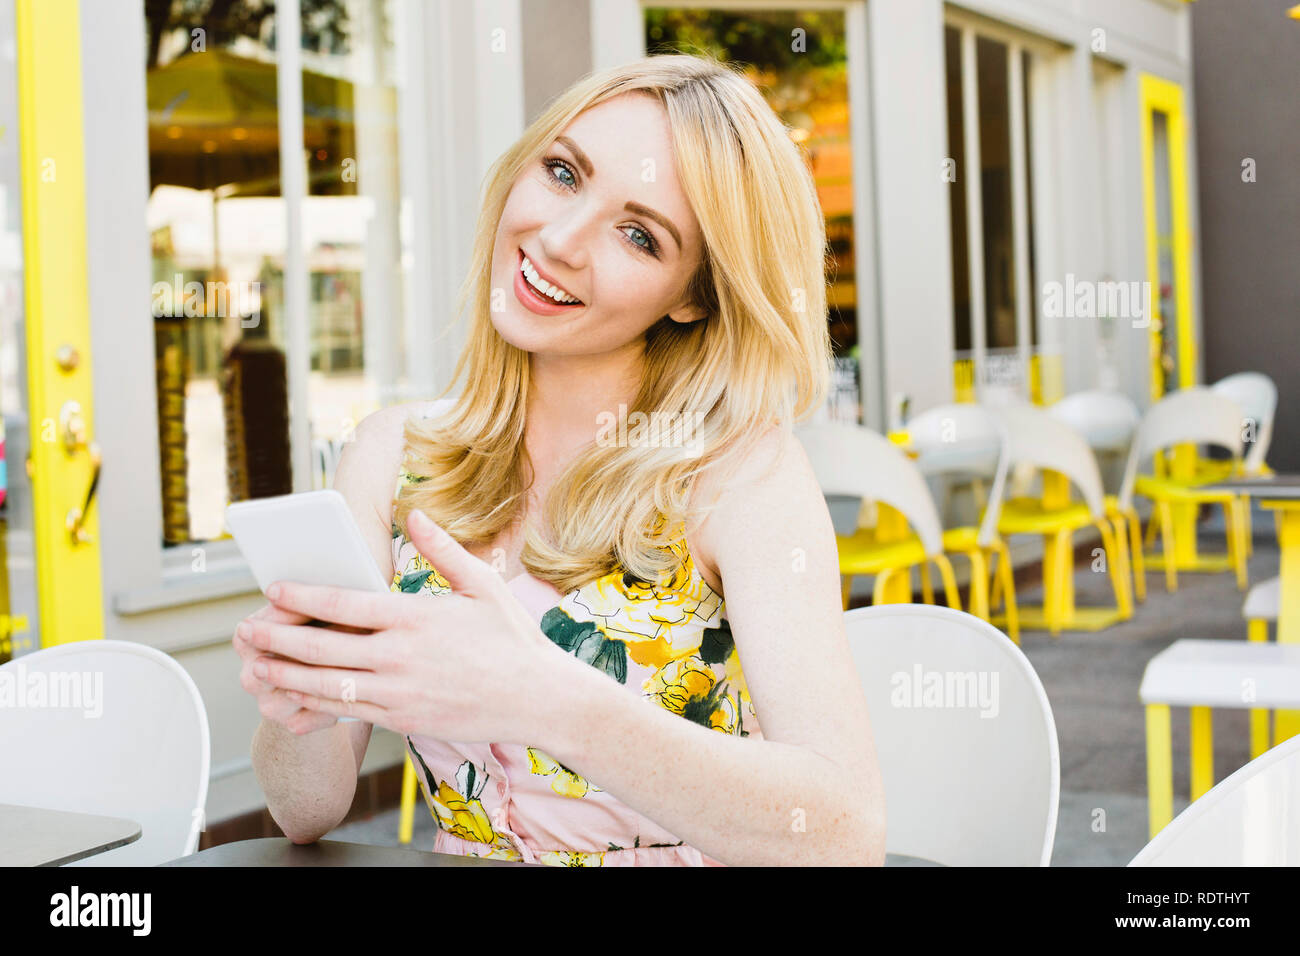 Jolie jeune femme blonde est titulaire d'un téléphone cellulaire et sourit est heureux et All American Girl Banque D'Images